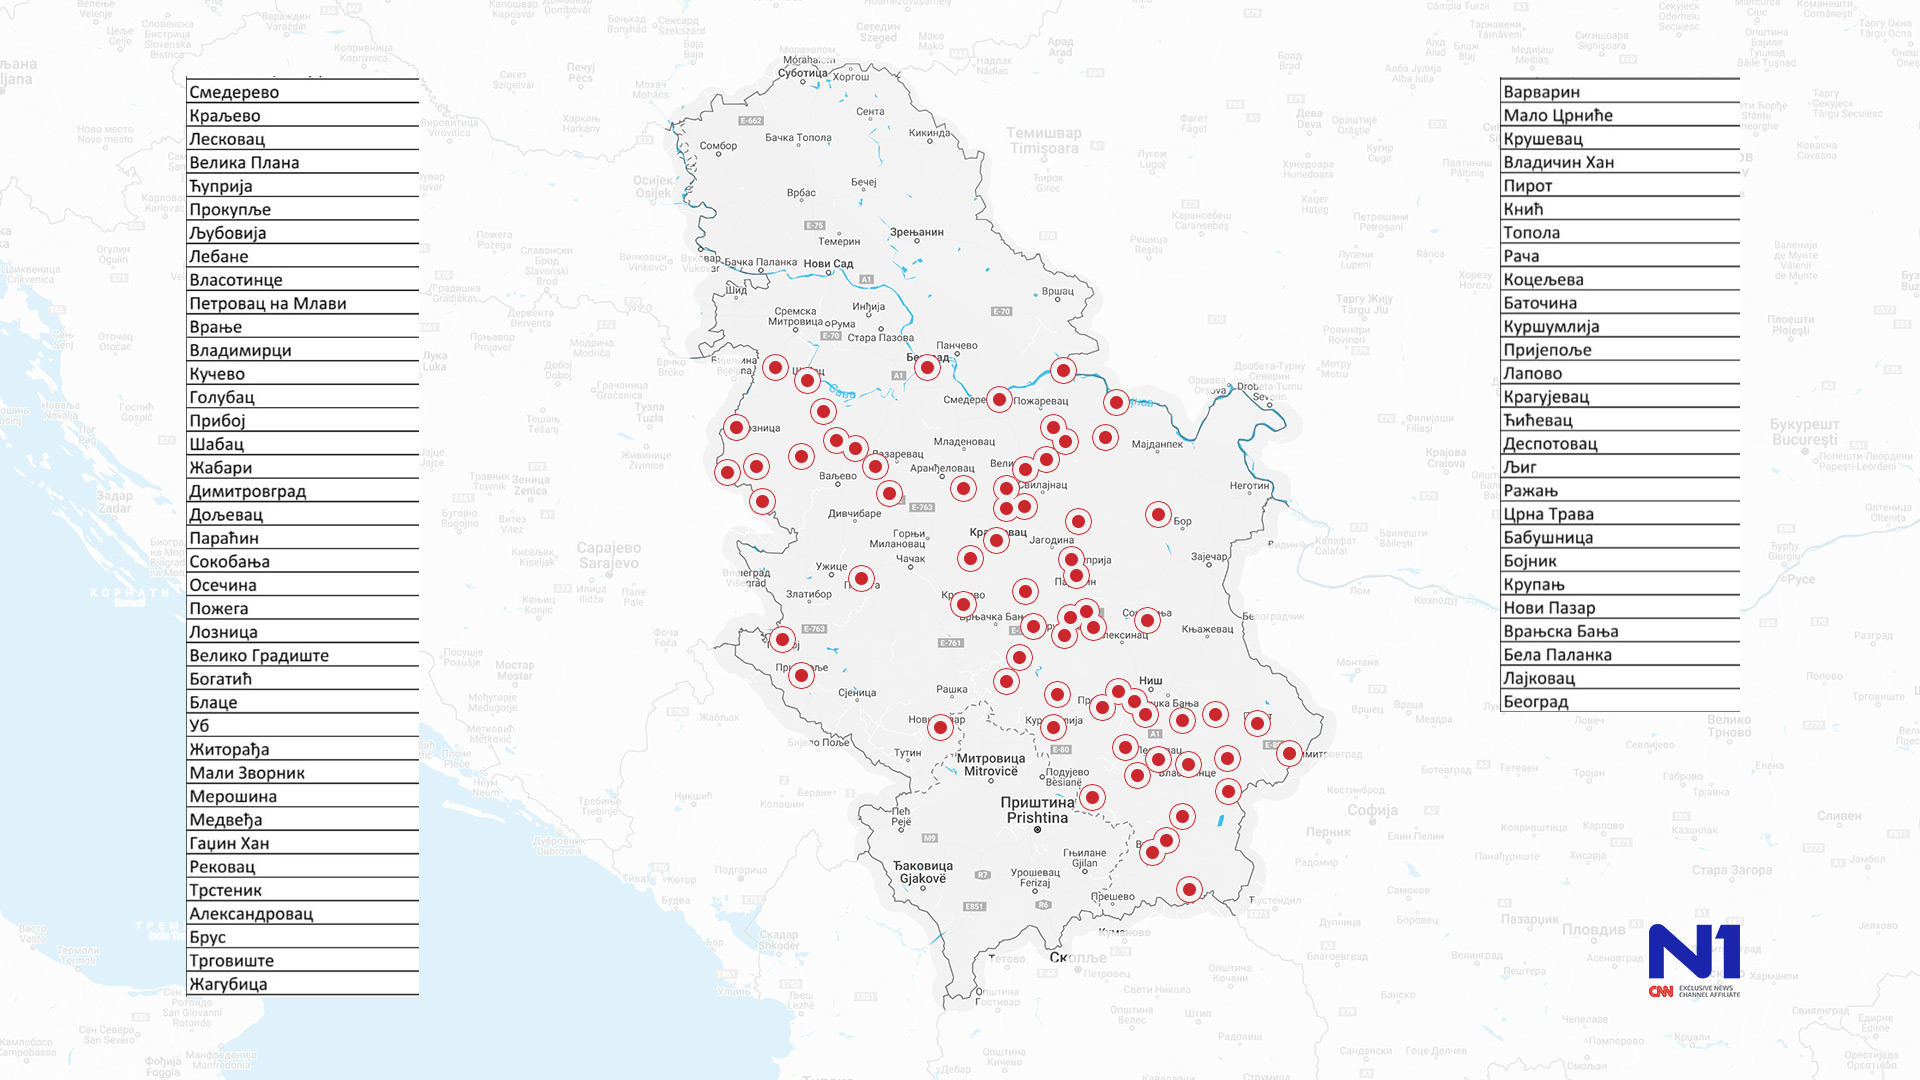 Vanredni lokalni izbori u 66 gradova i opština, ali ne i u Vojvodini 2